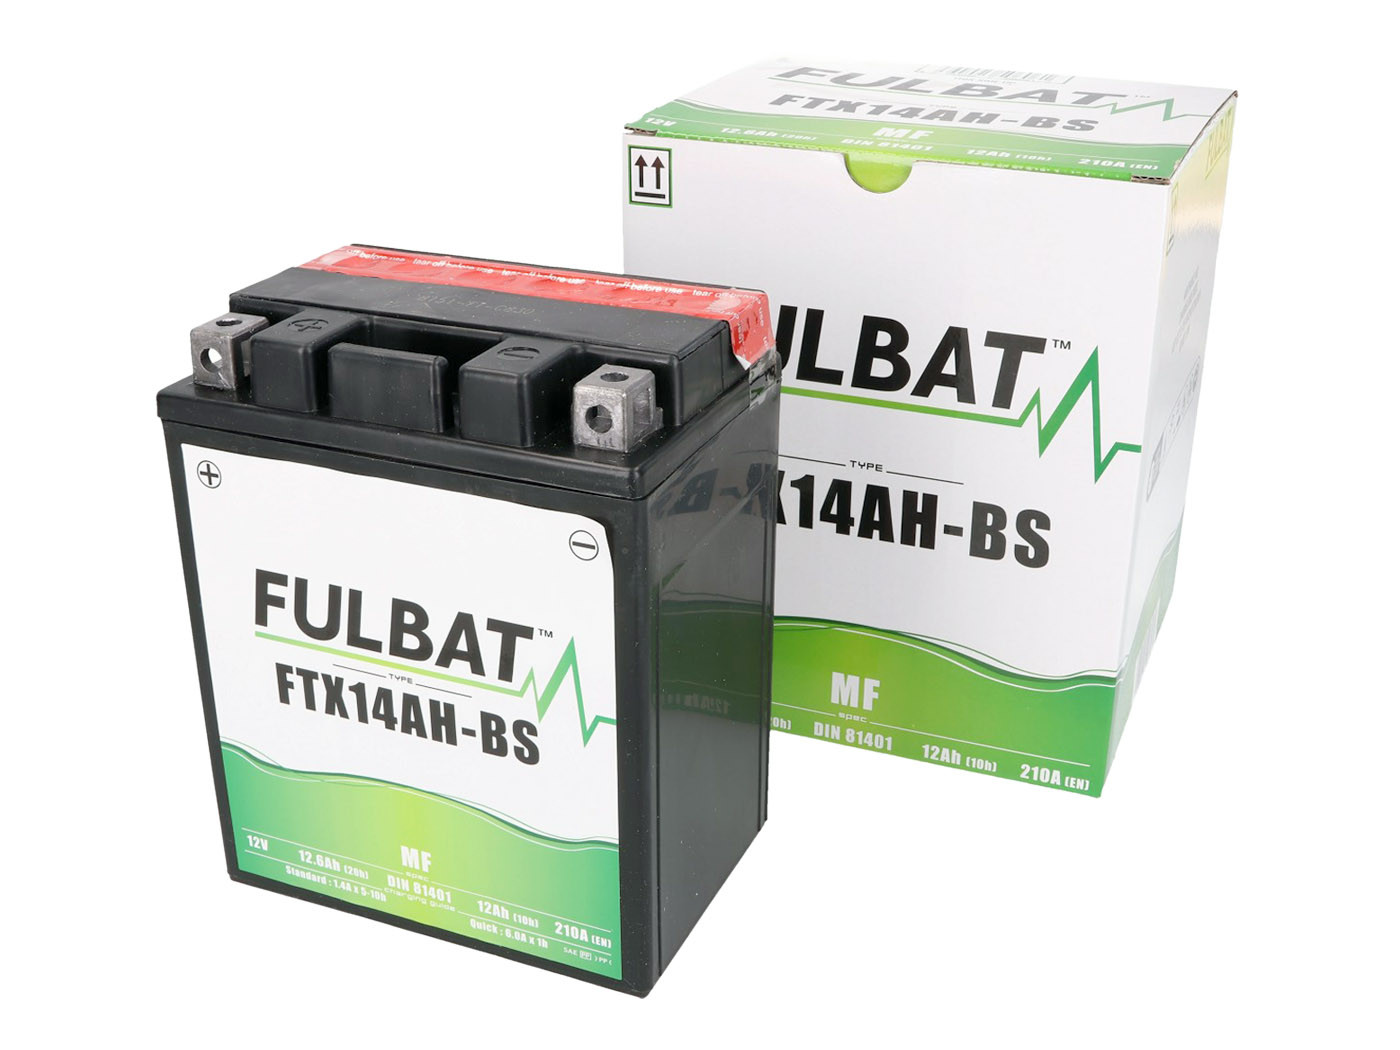 Fulbat FTX14AH-BS MF gondozásmentes akkumulátor